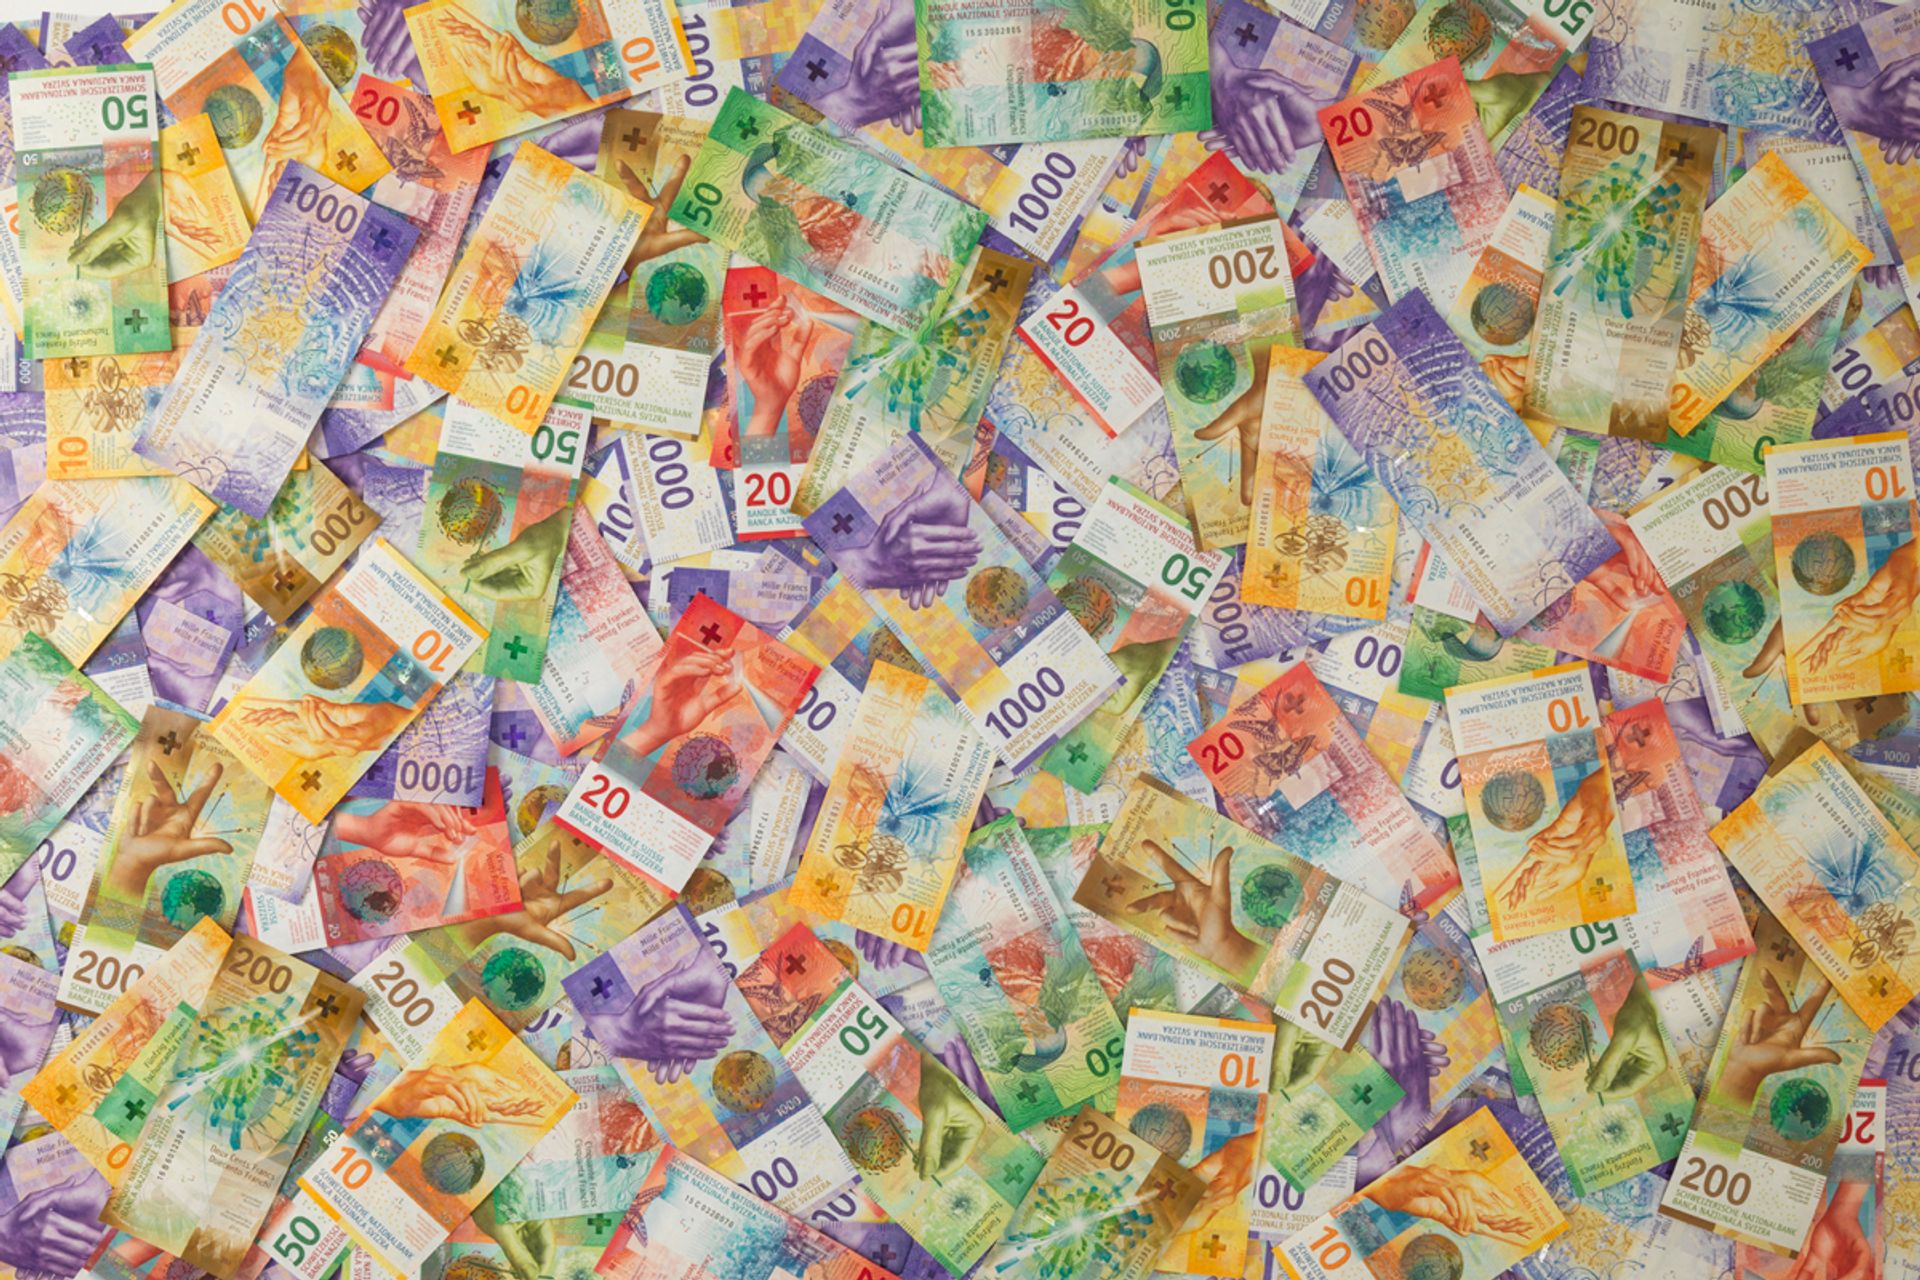 Banconote svizzere da 10, 20, 50, 200 e 1000 franchi mescolate fra loro